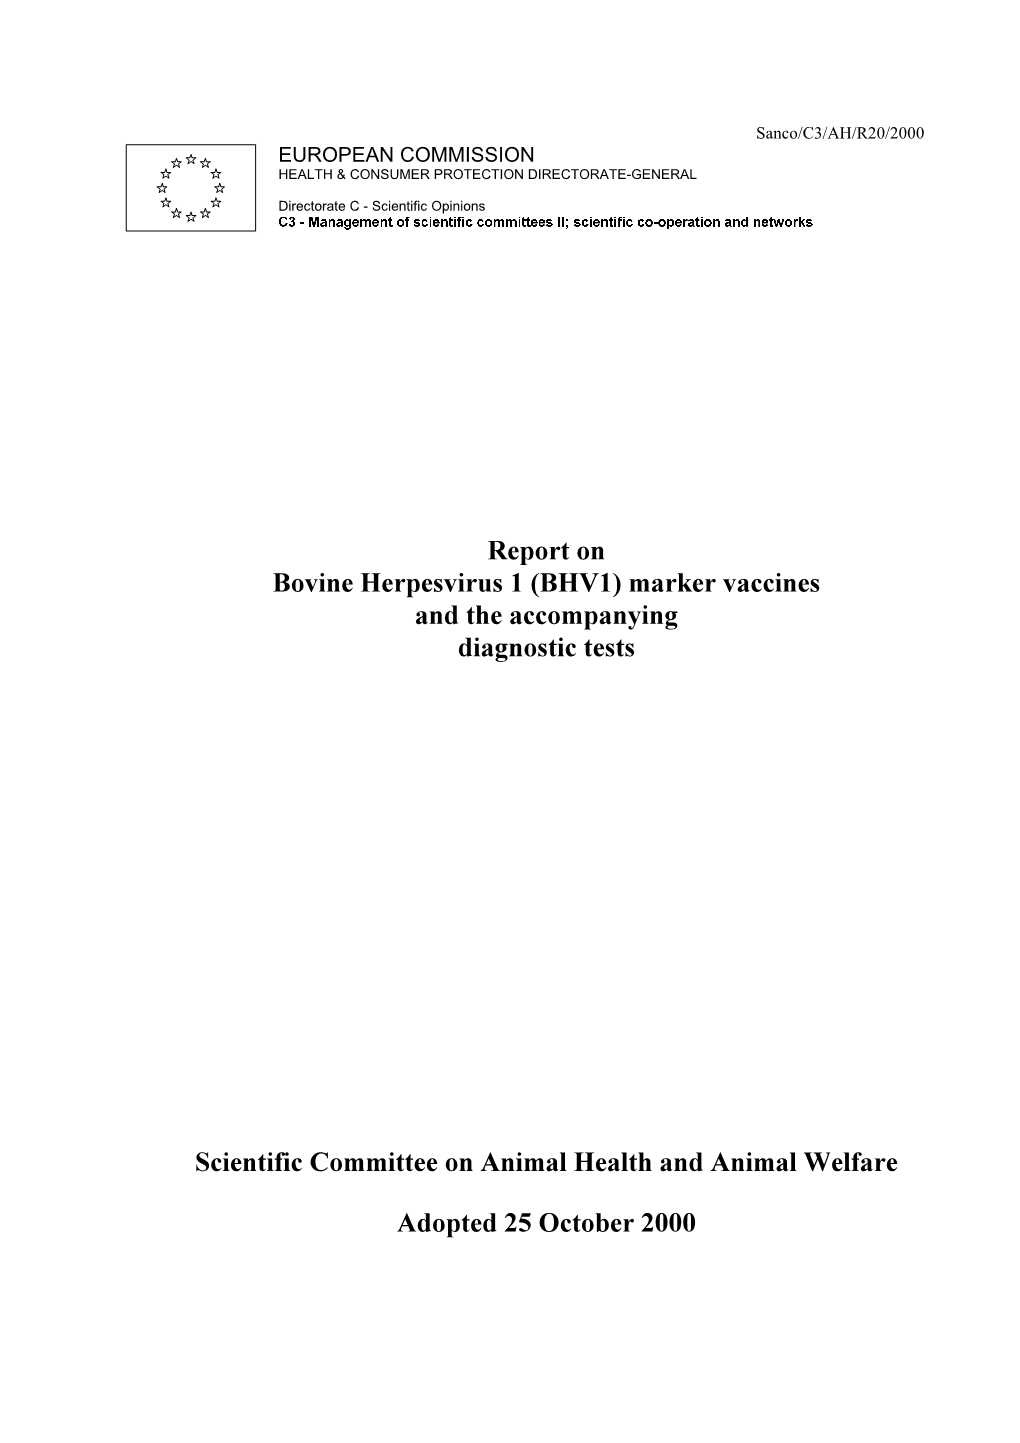 Report on Bovine Herpesvirus 1 (BHV1)